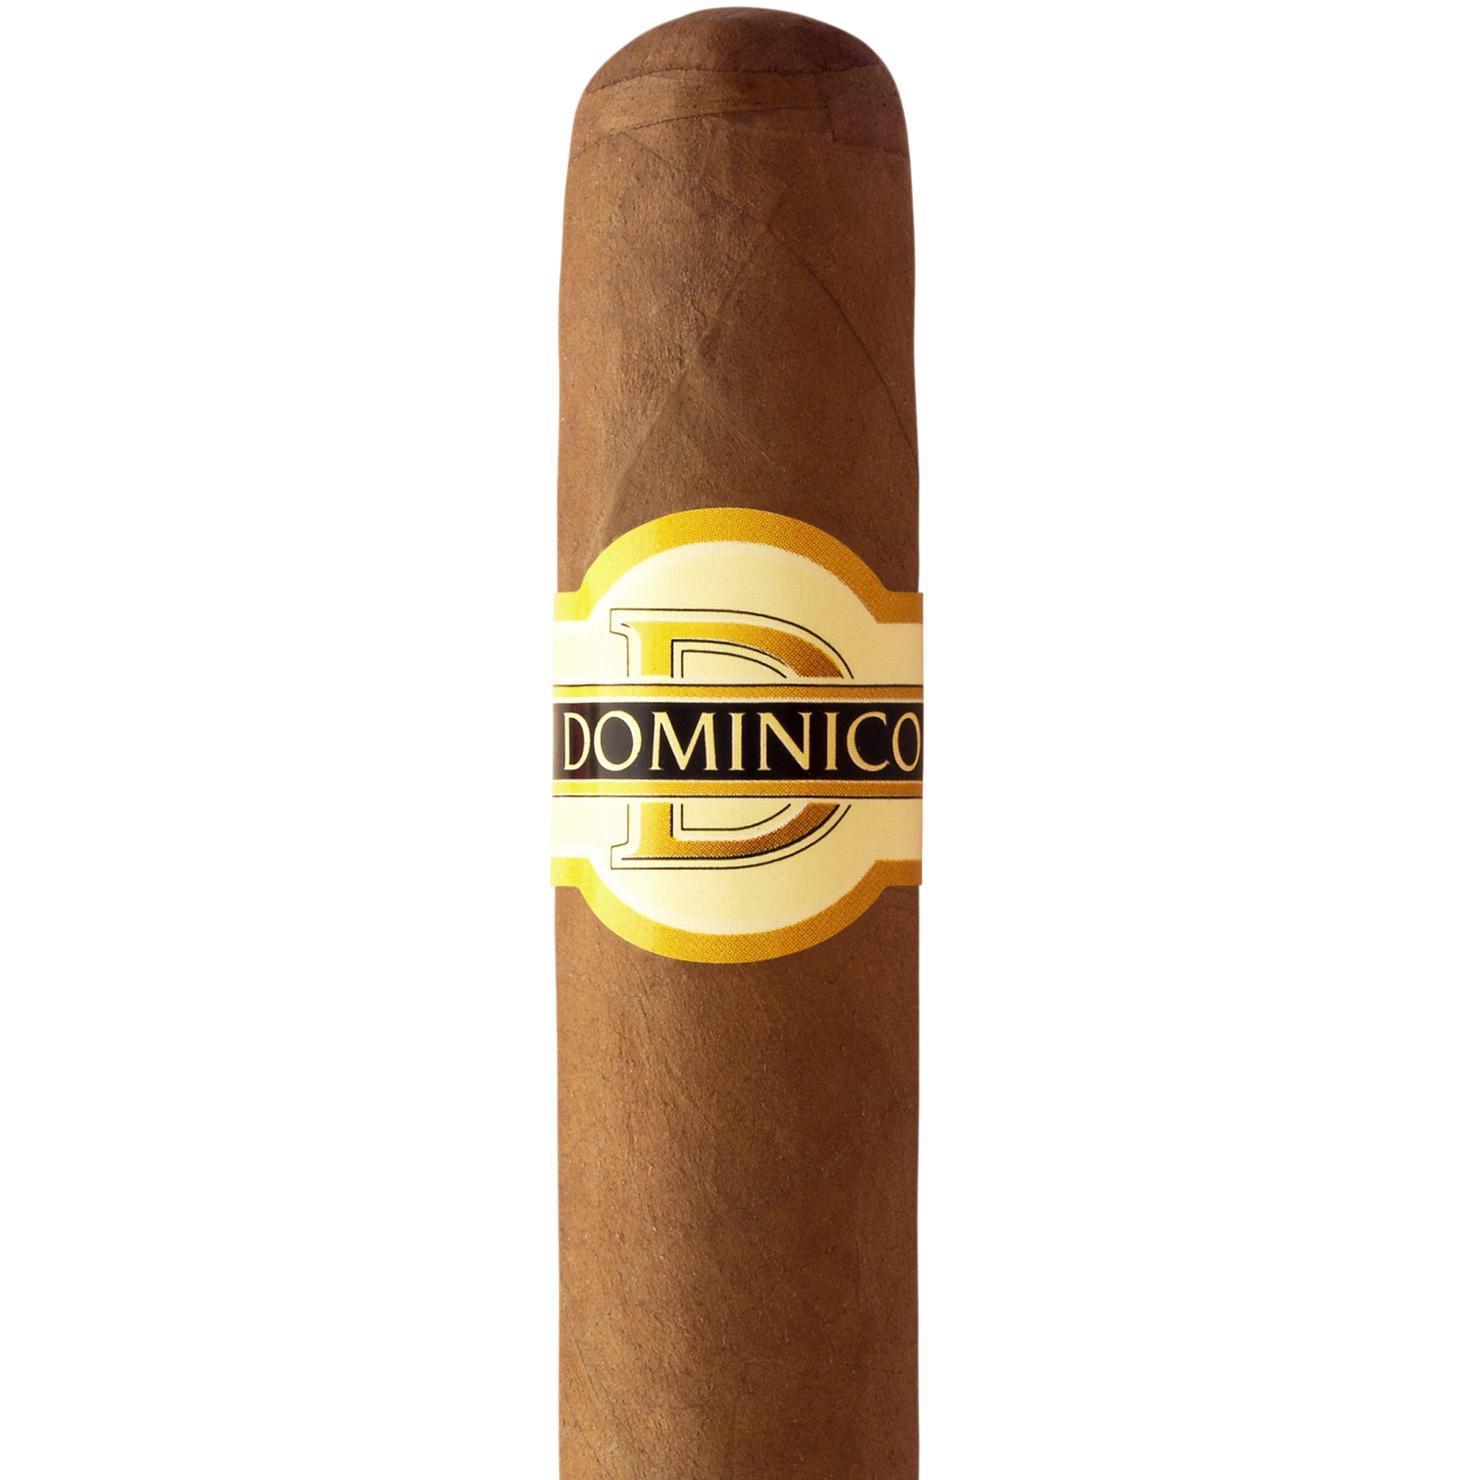 Dominico Robusto 1 x 10 Zigarren 10St